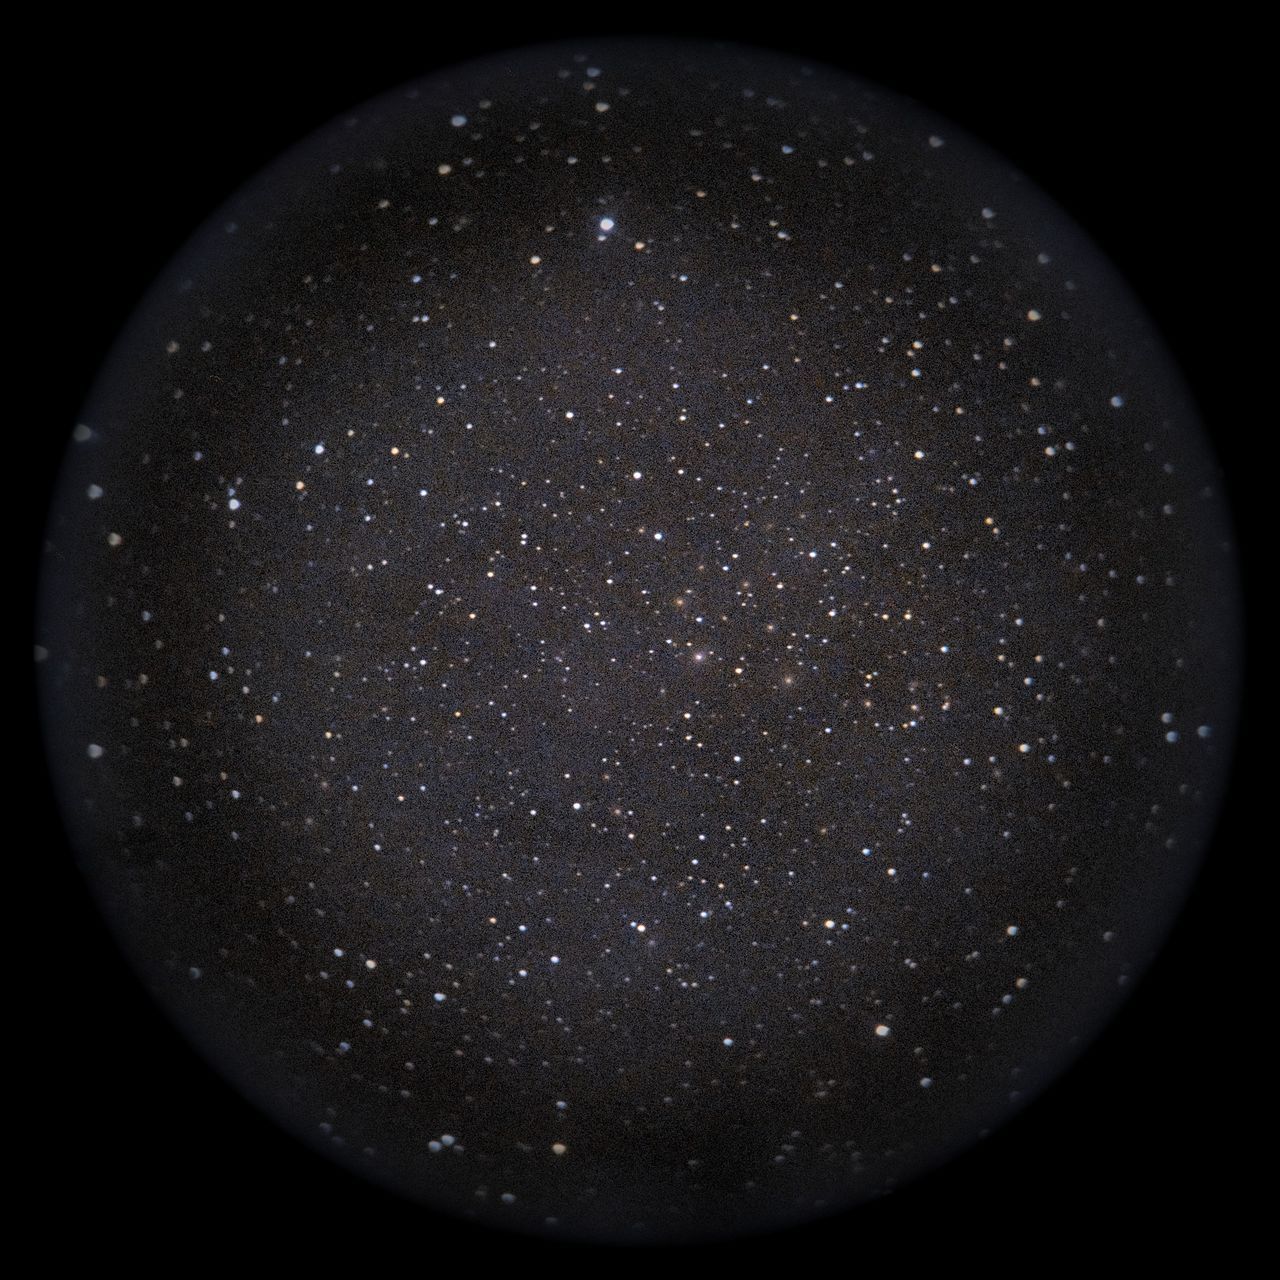 Image of NGC1275around